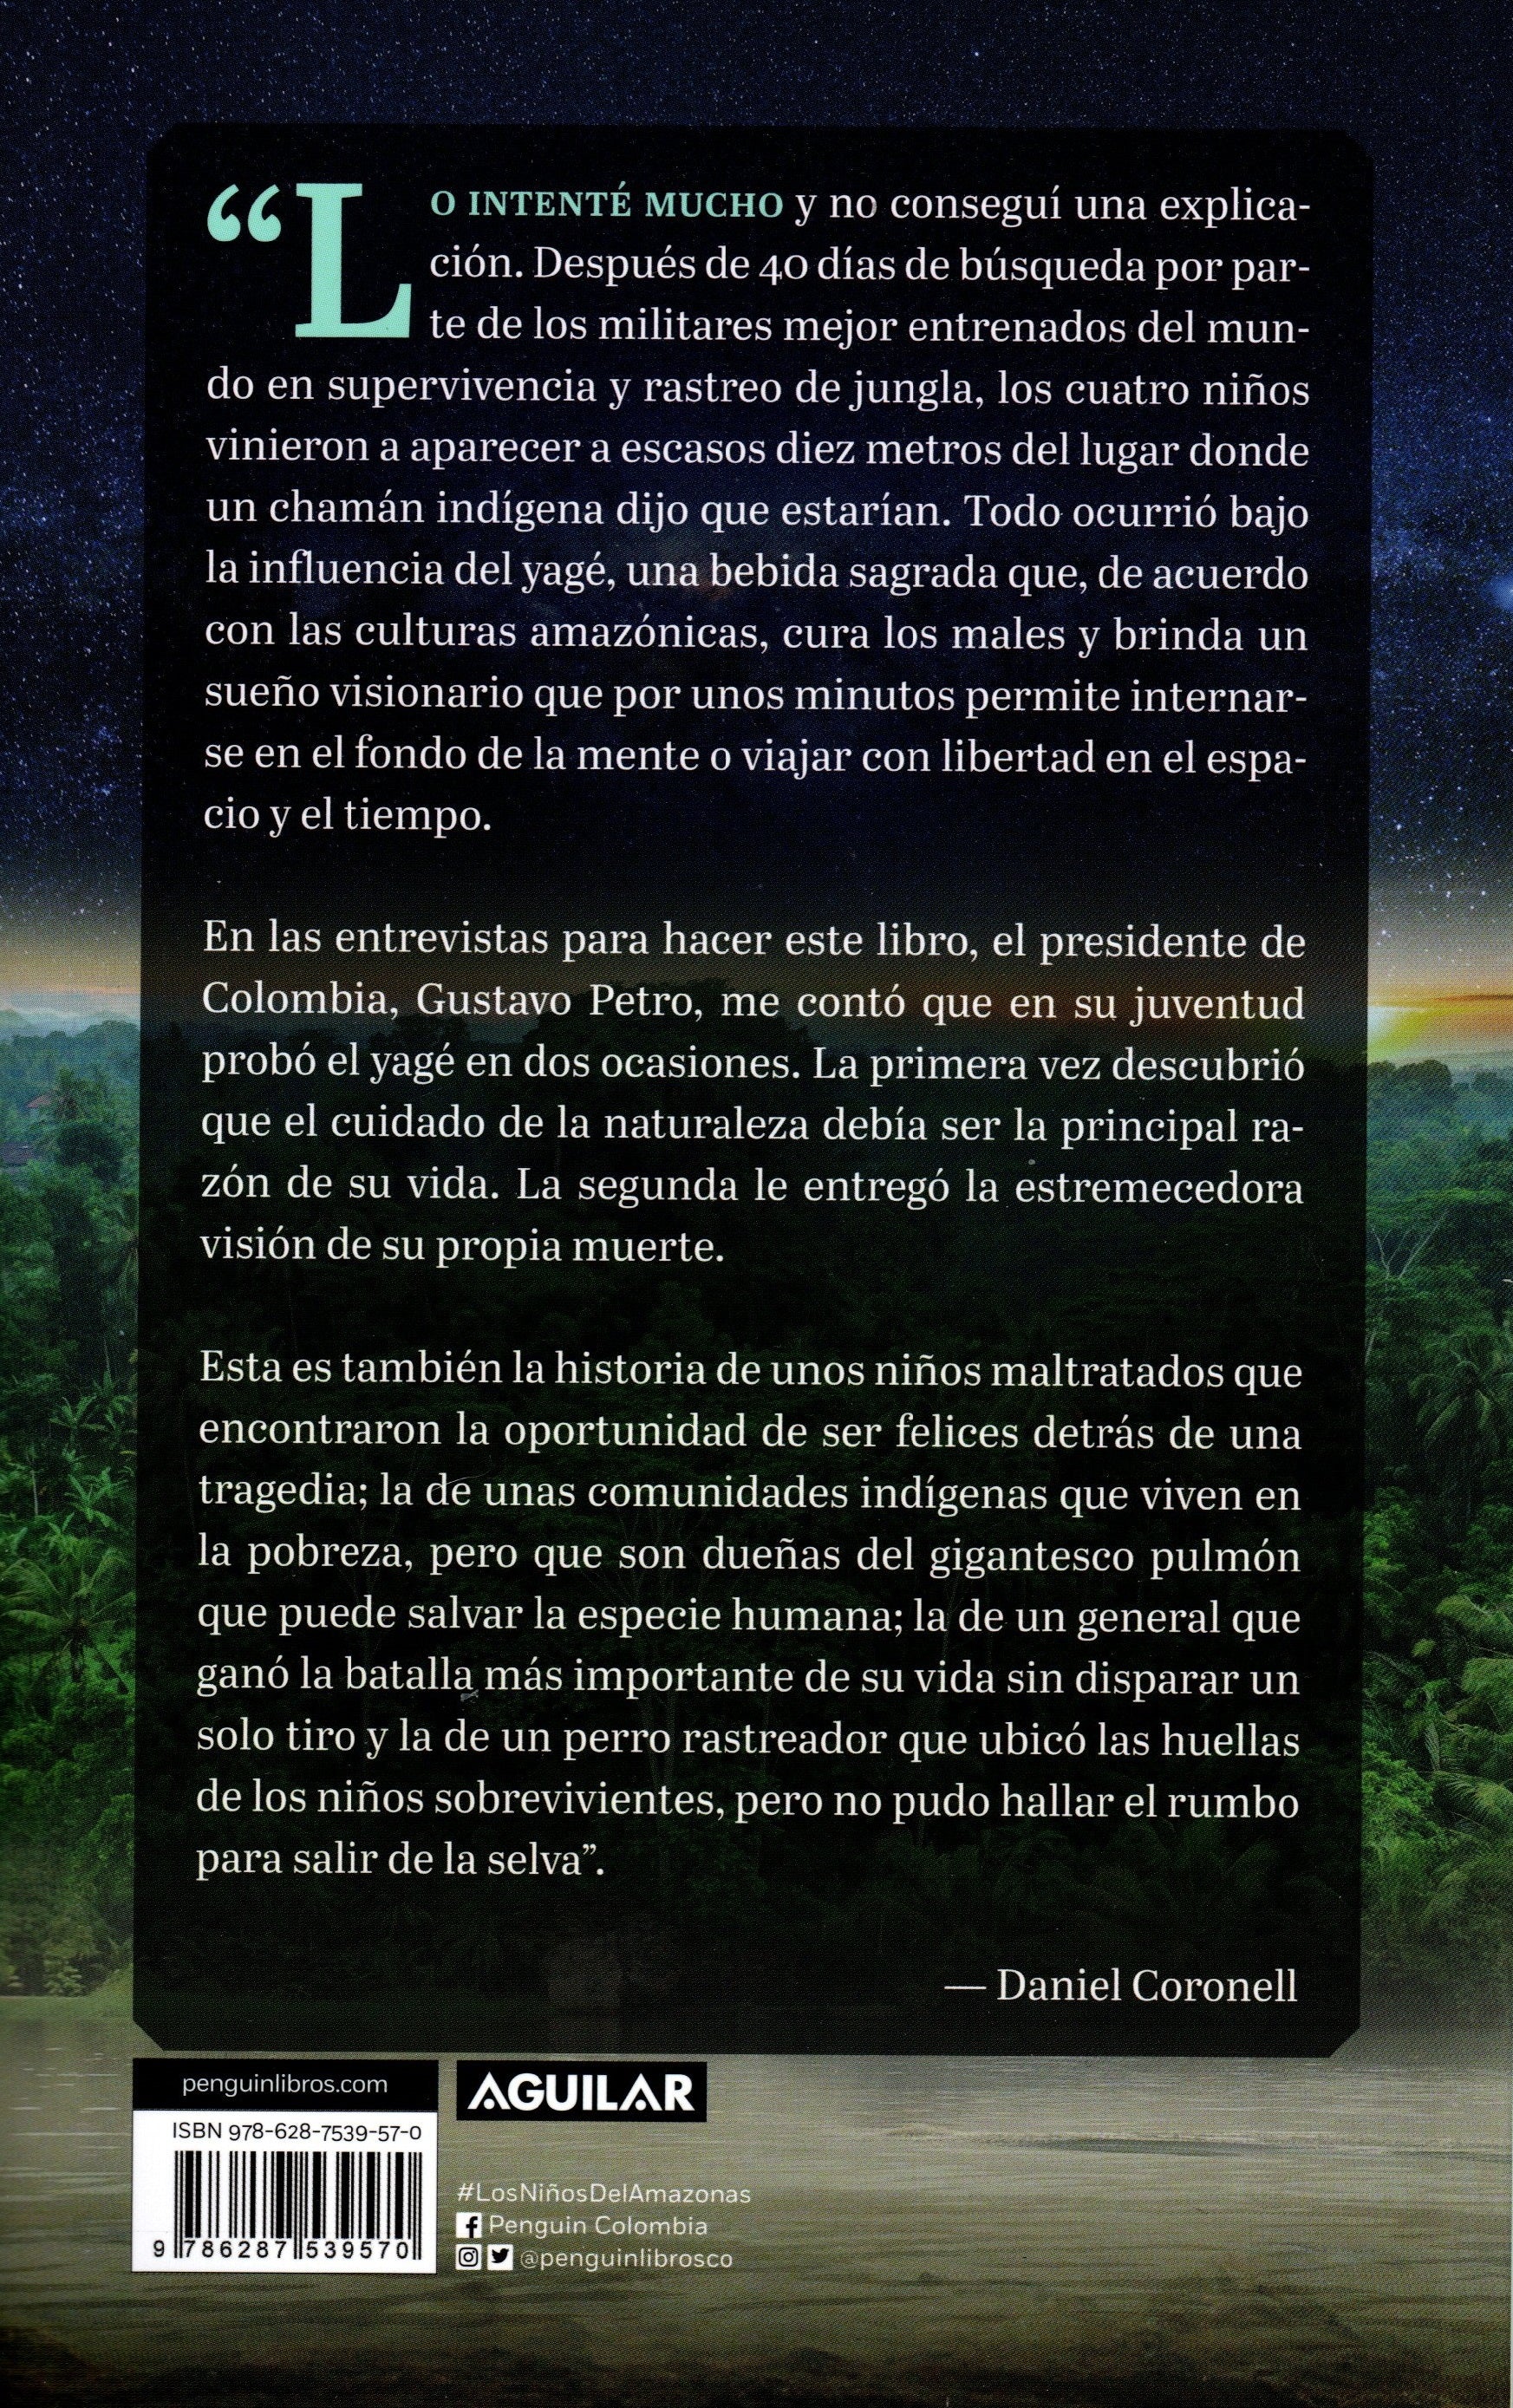 Libro Daniel Coronell - Los Niños Del Amazonas